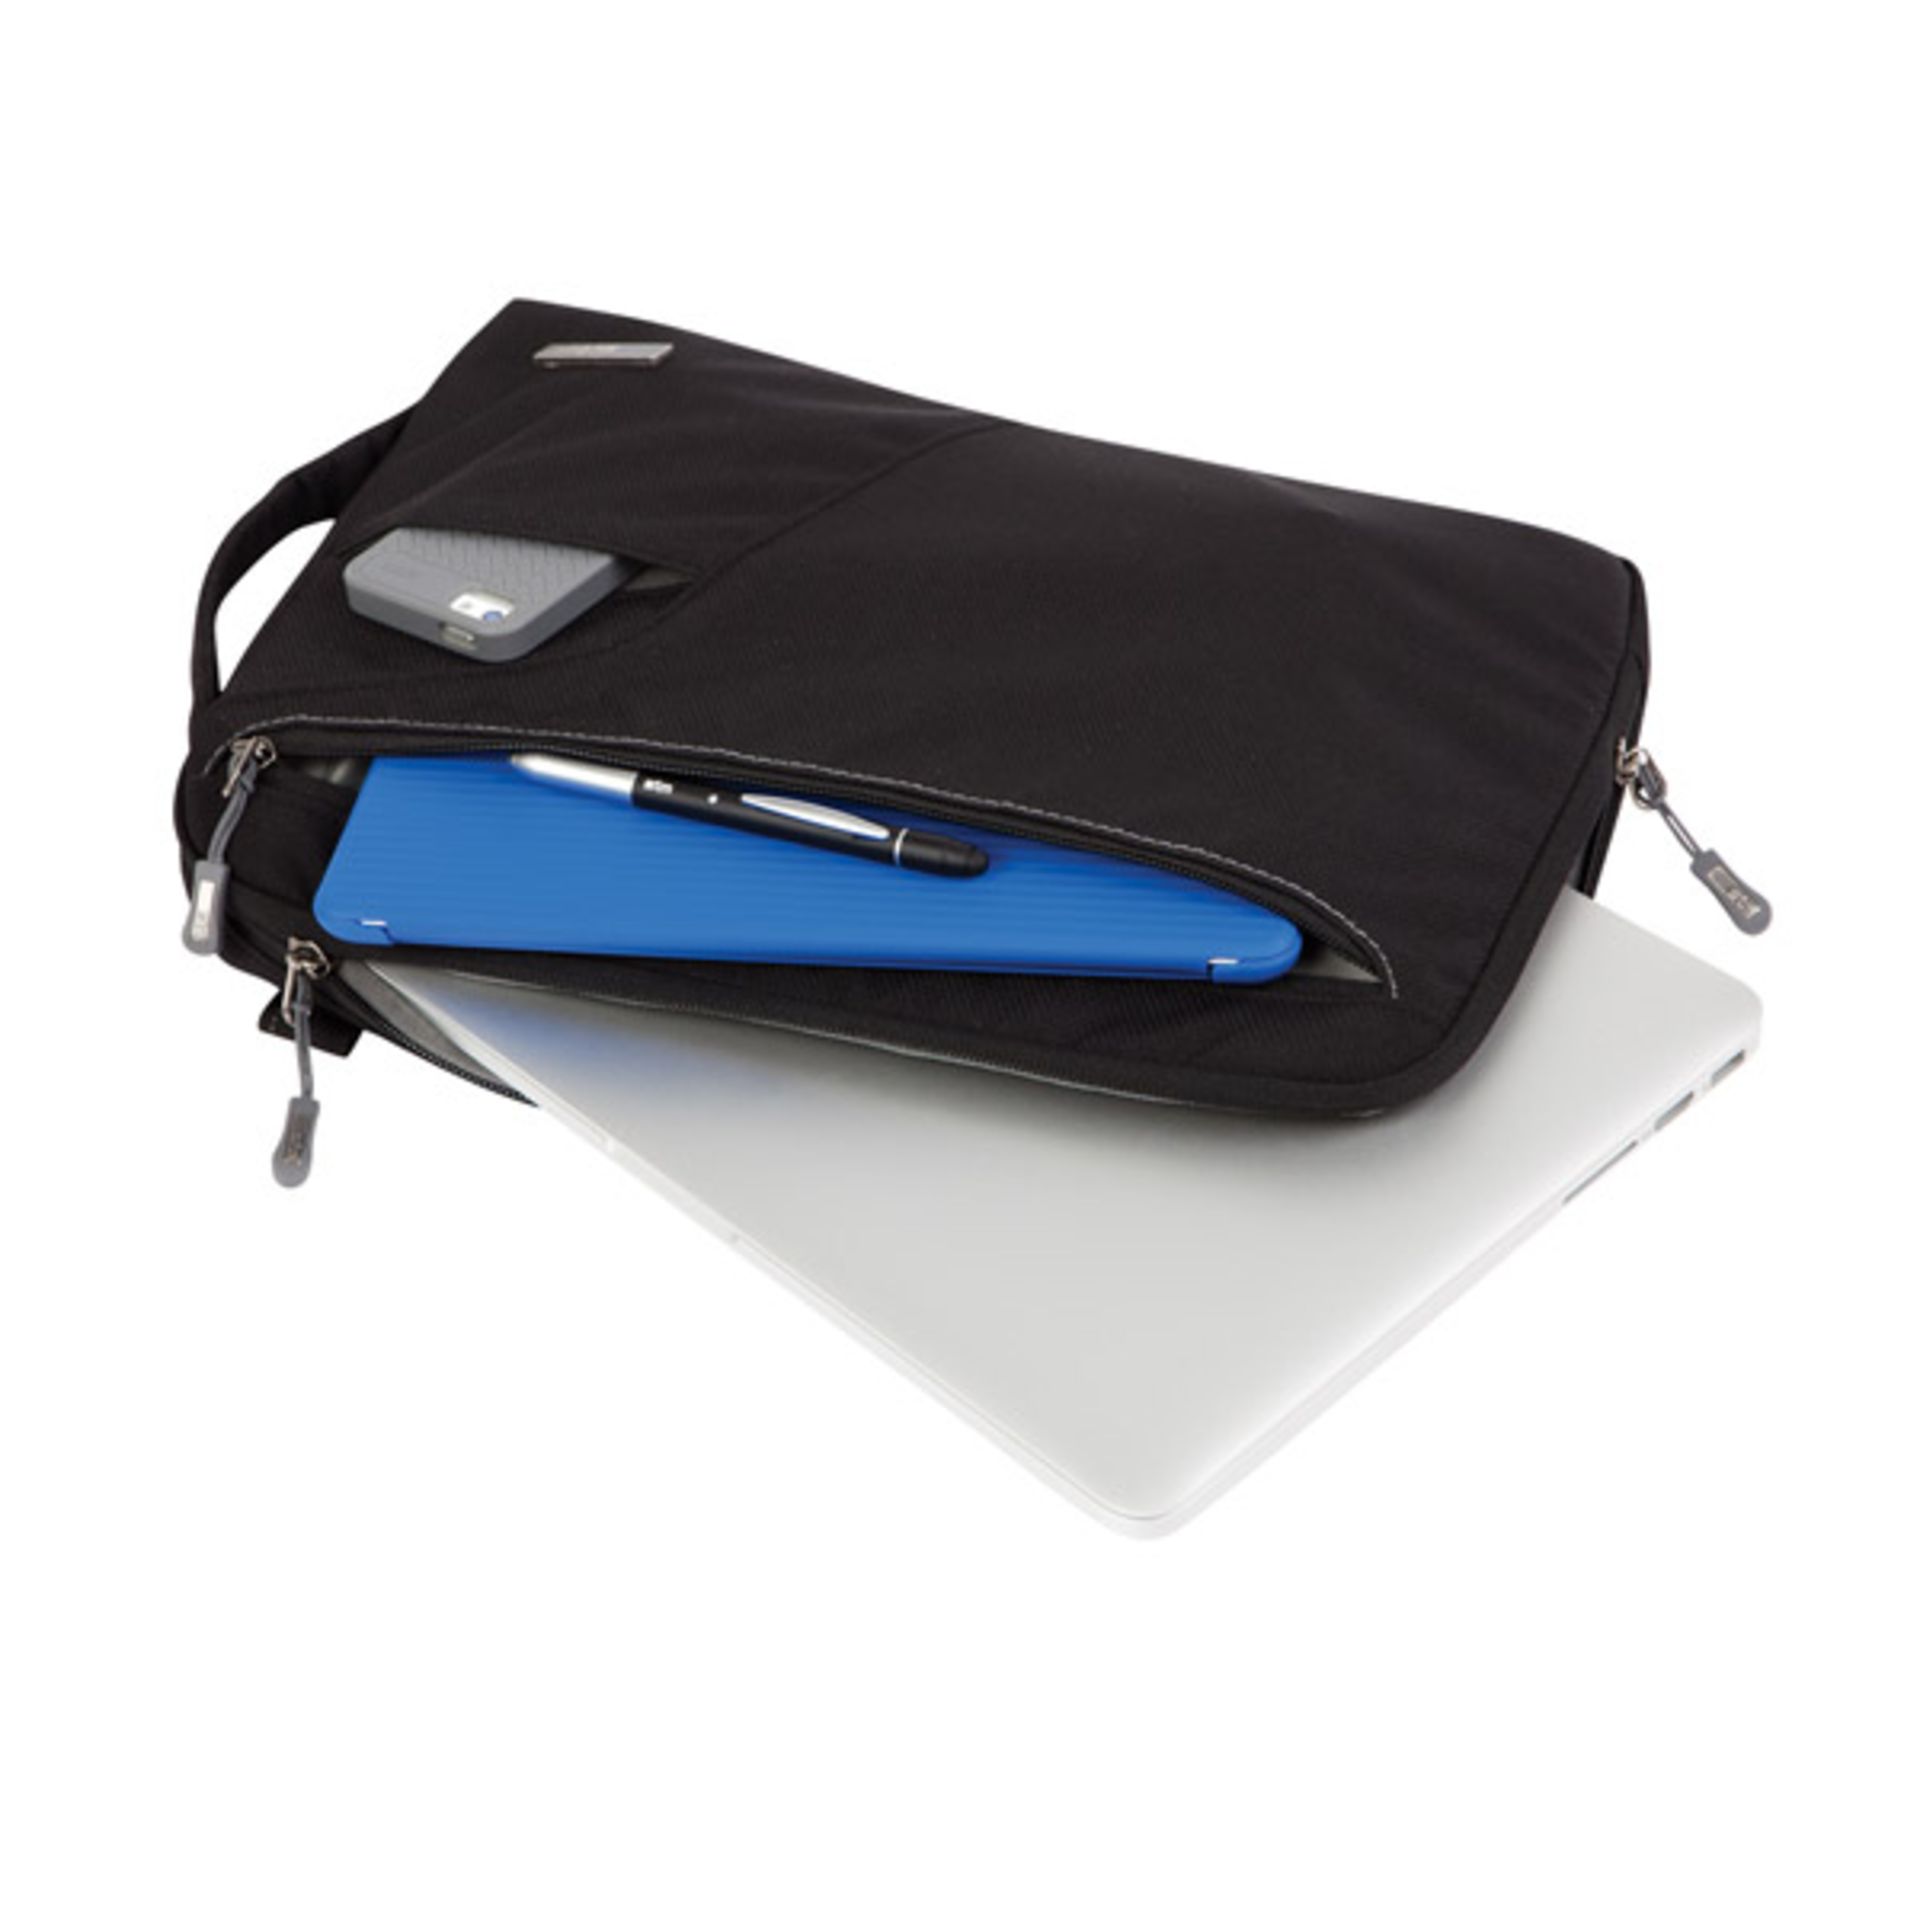 V Brand New STM Blazer Padded Sleeve - Bag For Laptops And Tablets 11" Black With Removable Shoulder - Image 4 of 4